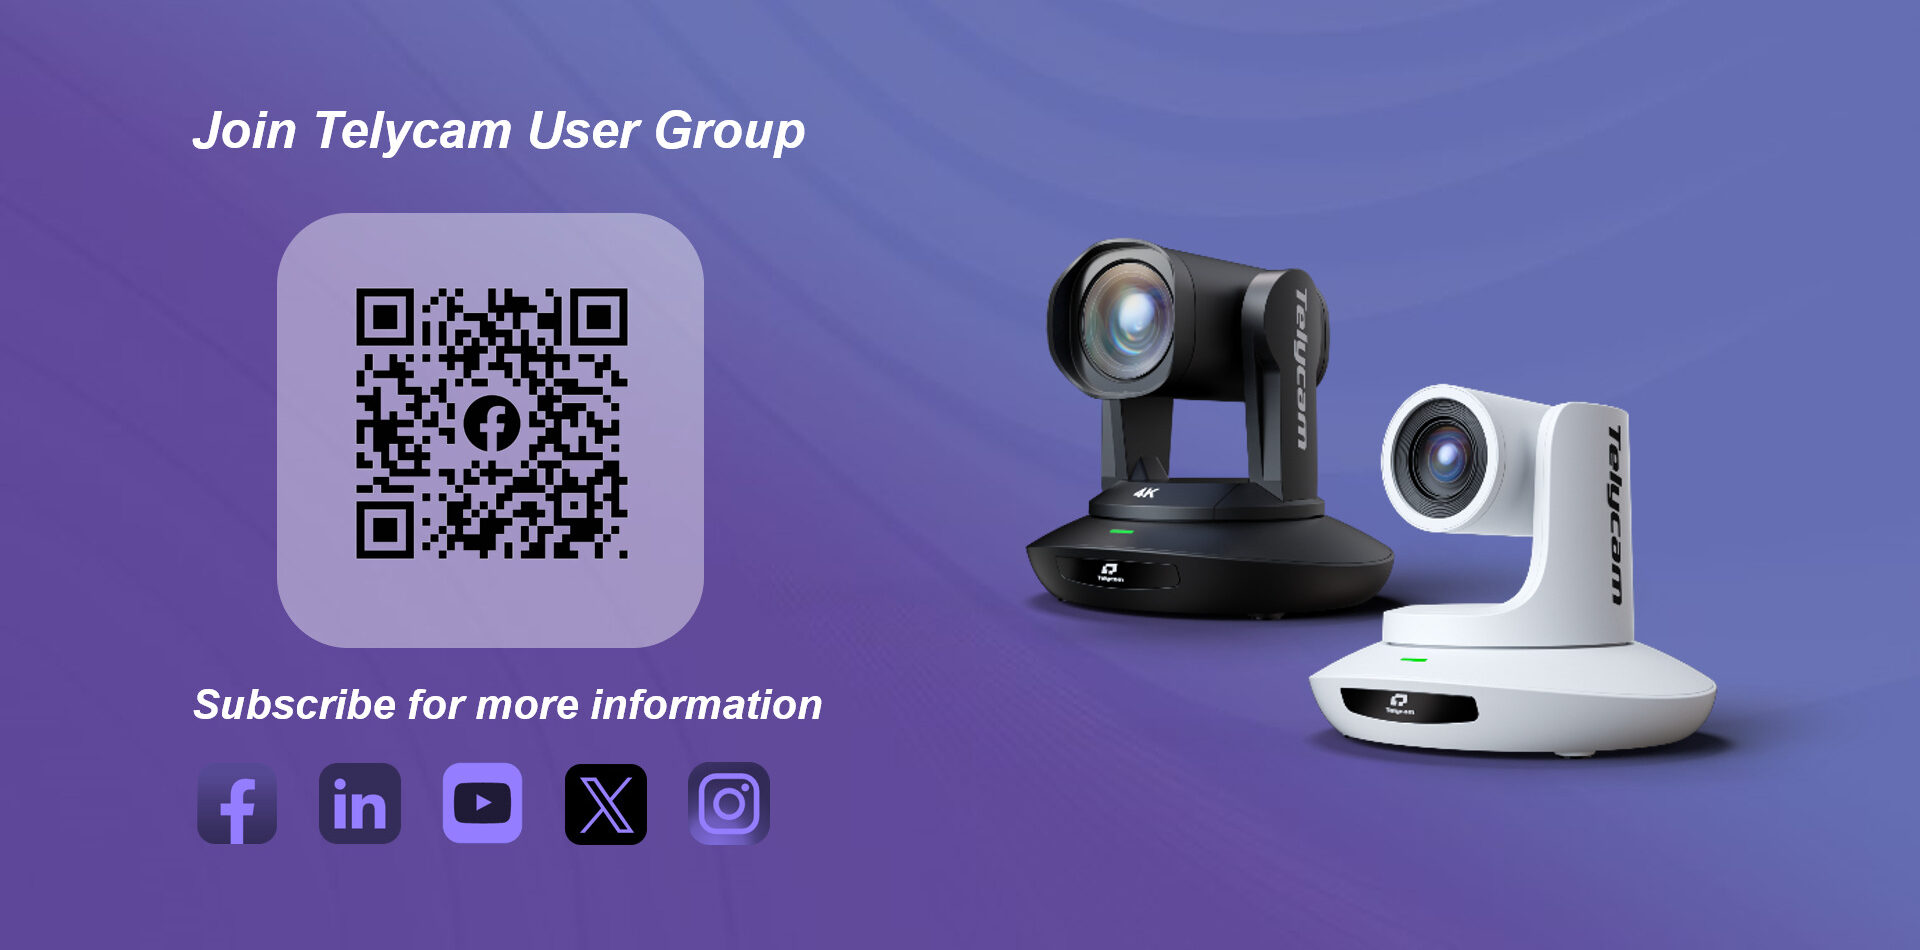 telycam user group 1